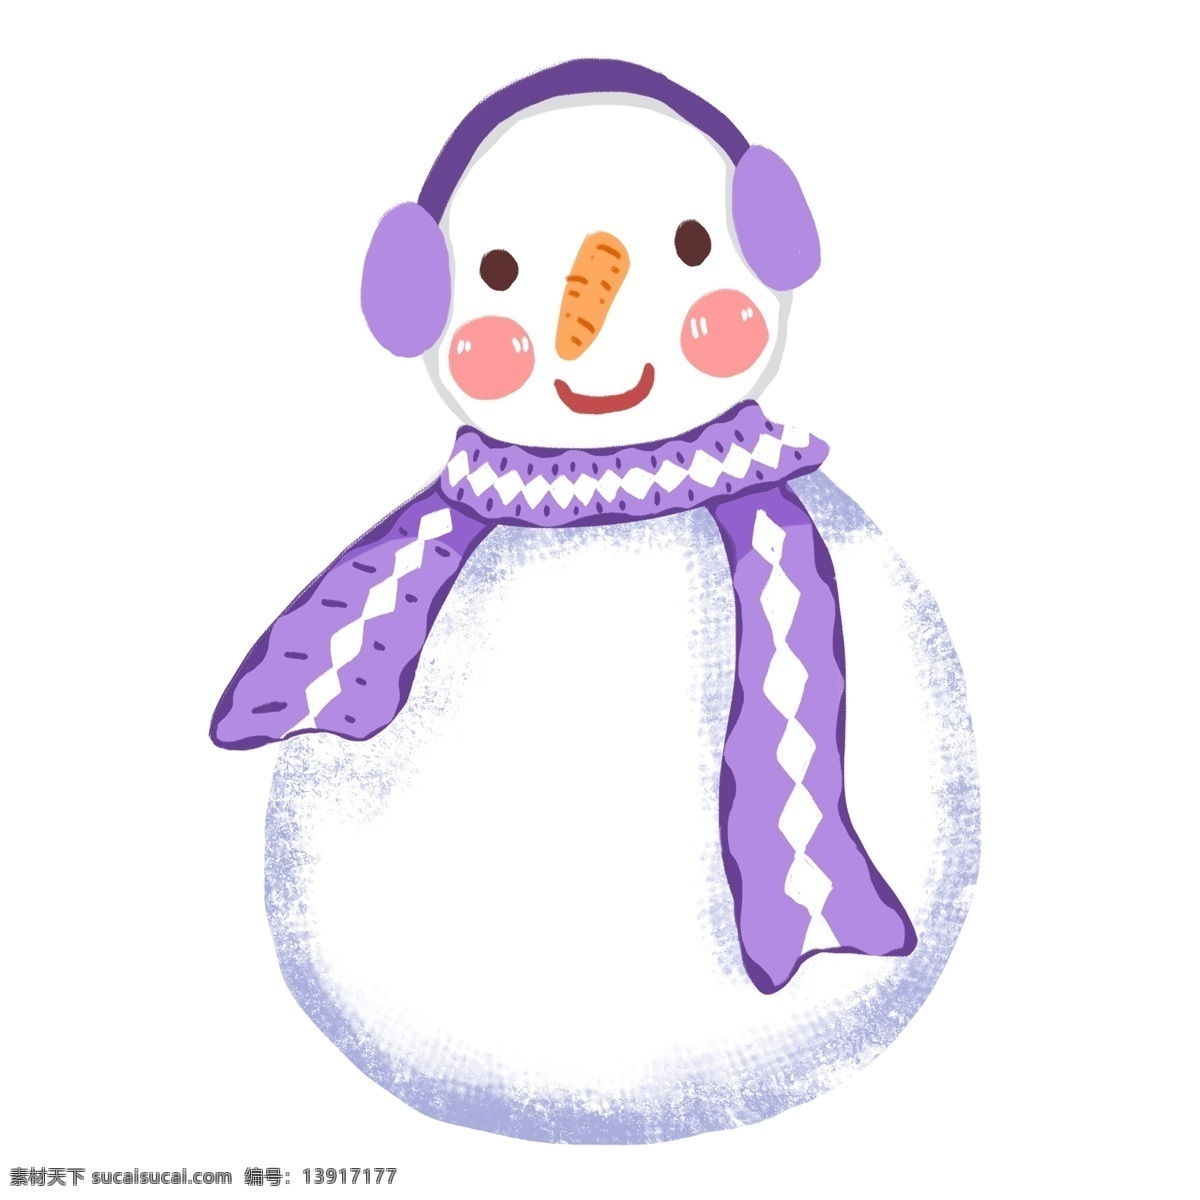 简约 爱带 耳机 雪人 原创 元素 可爱 紫色 冬季 围巾 原创元素 设计元素